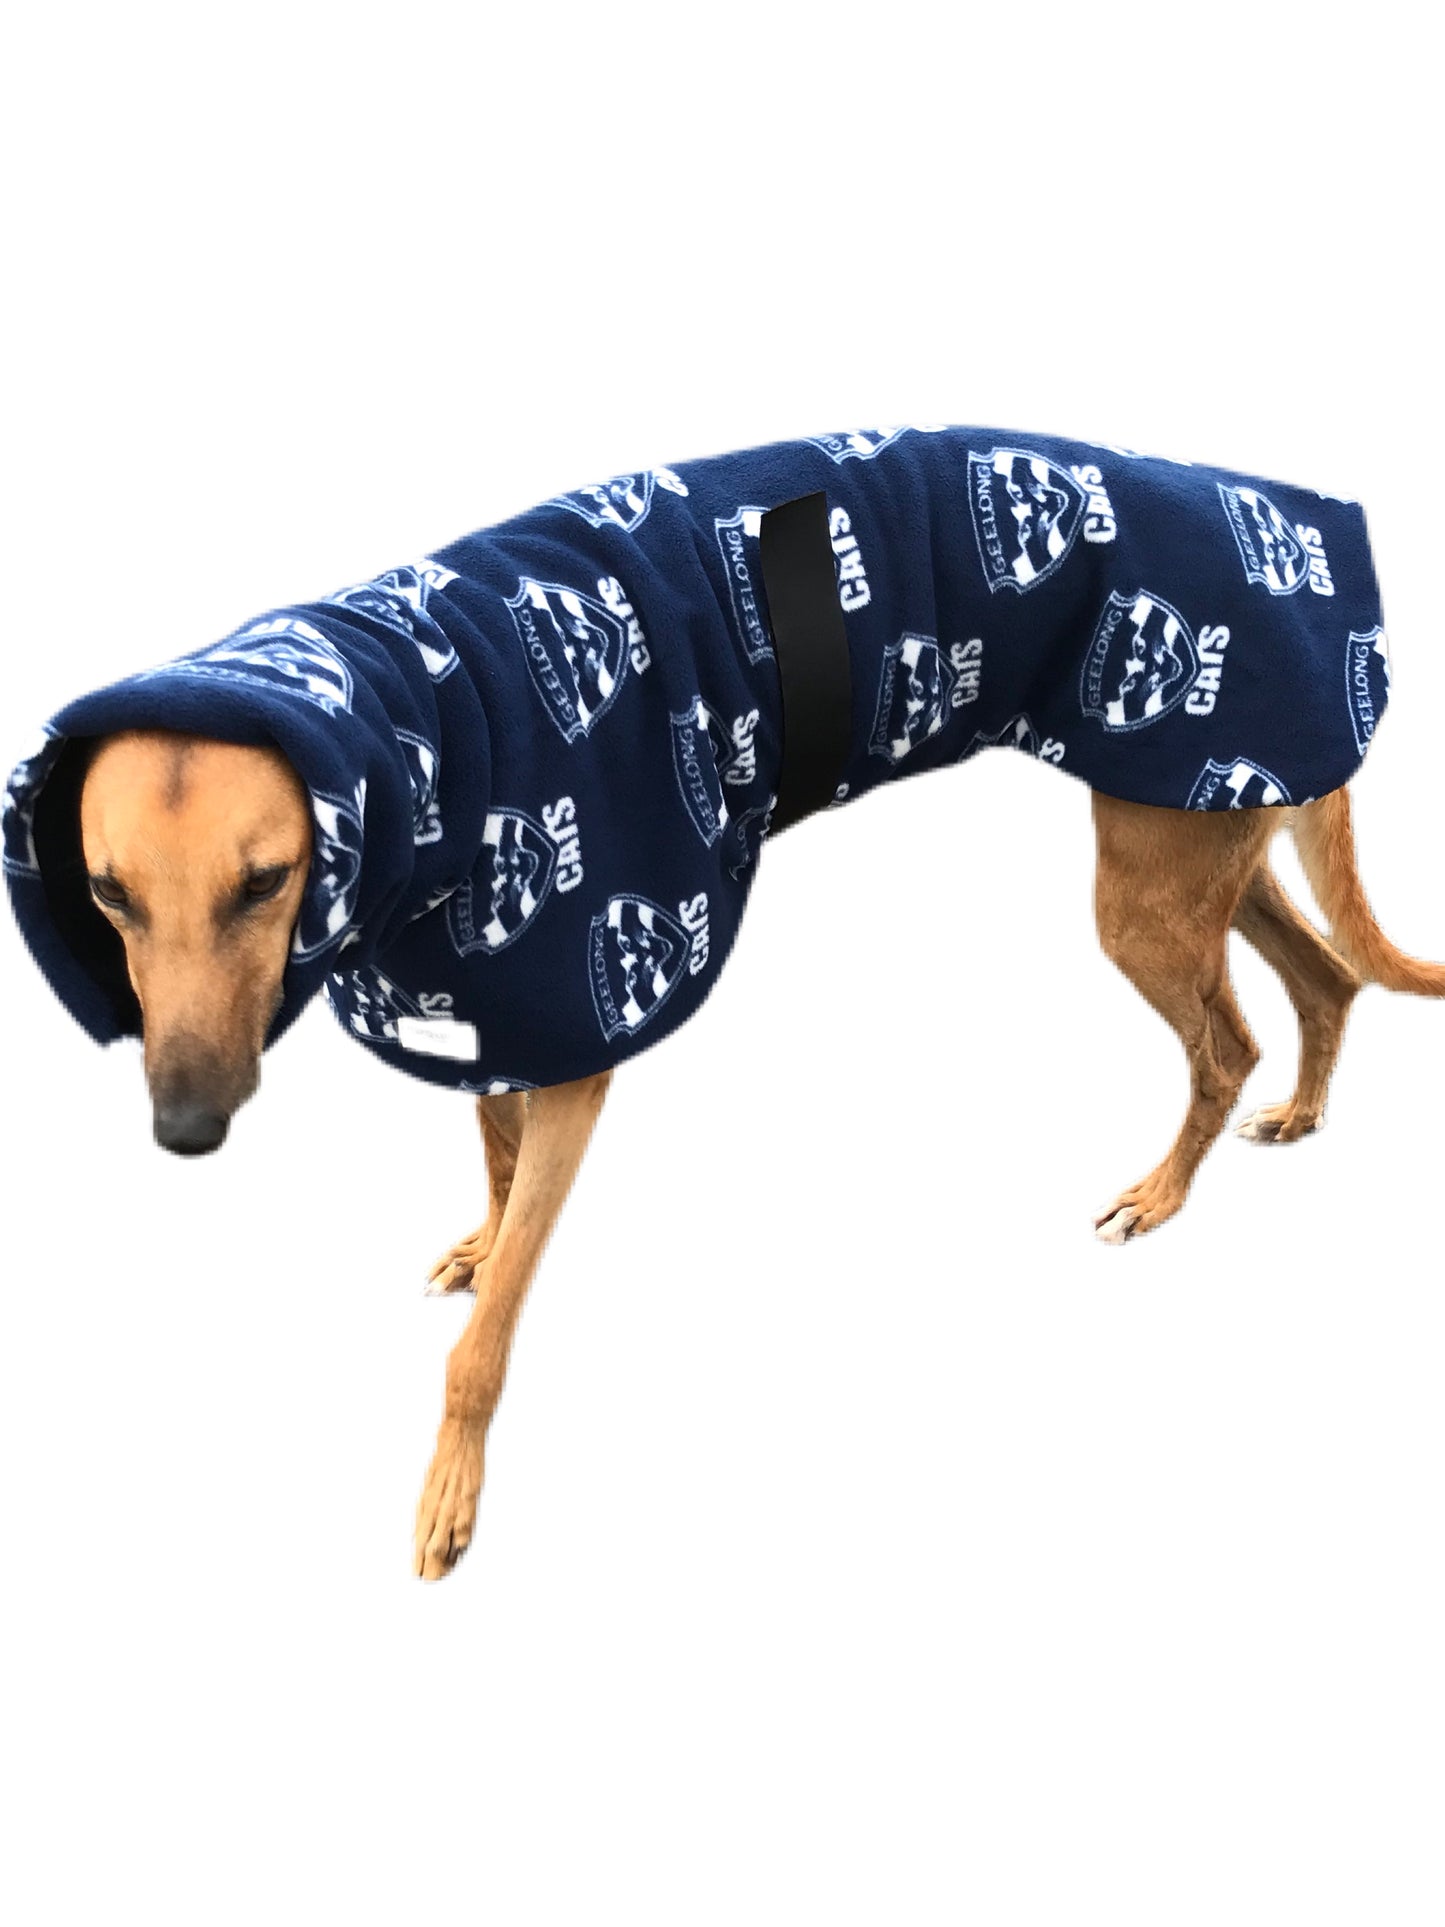 AFL Geelong inspired greyhound coat deluxe style double polar fleece washable